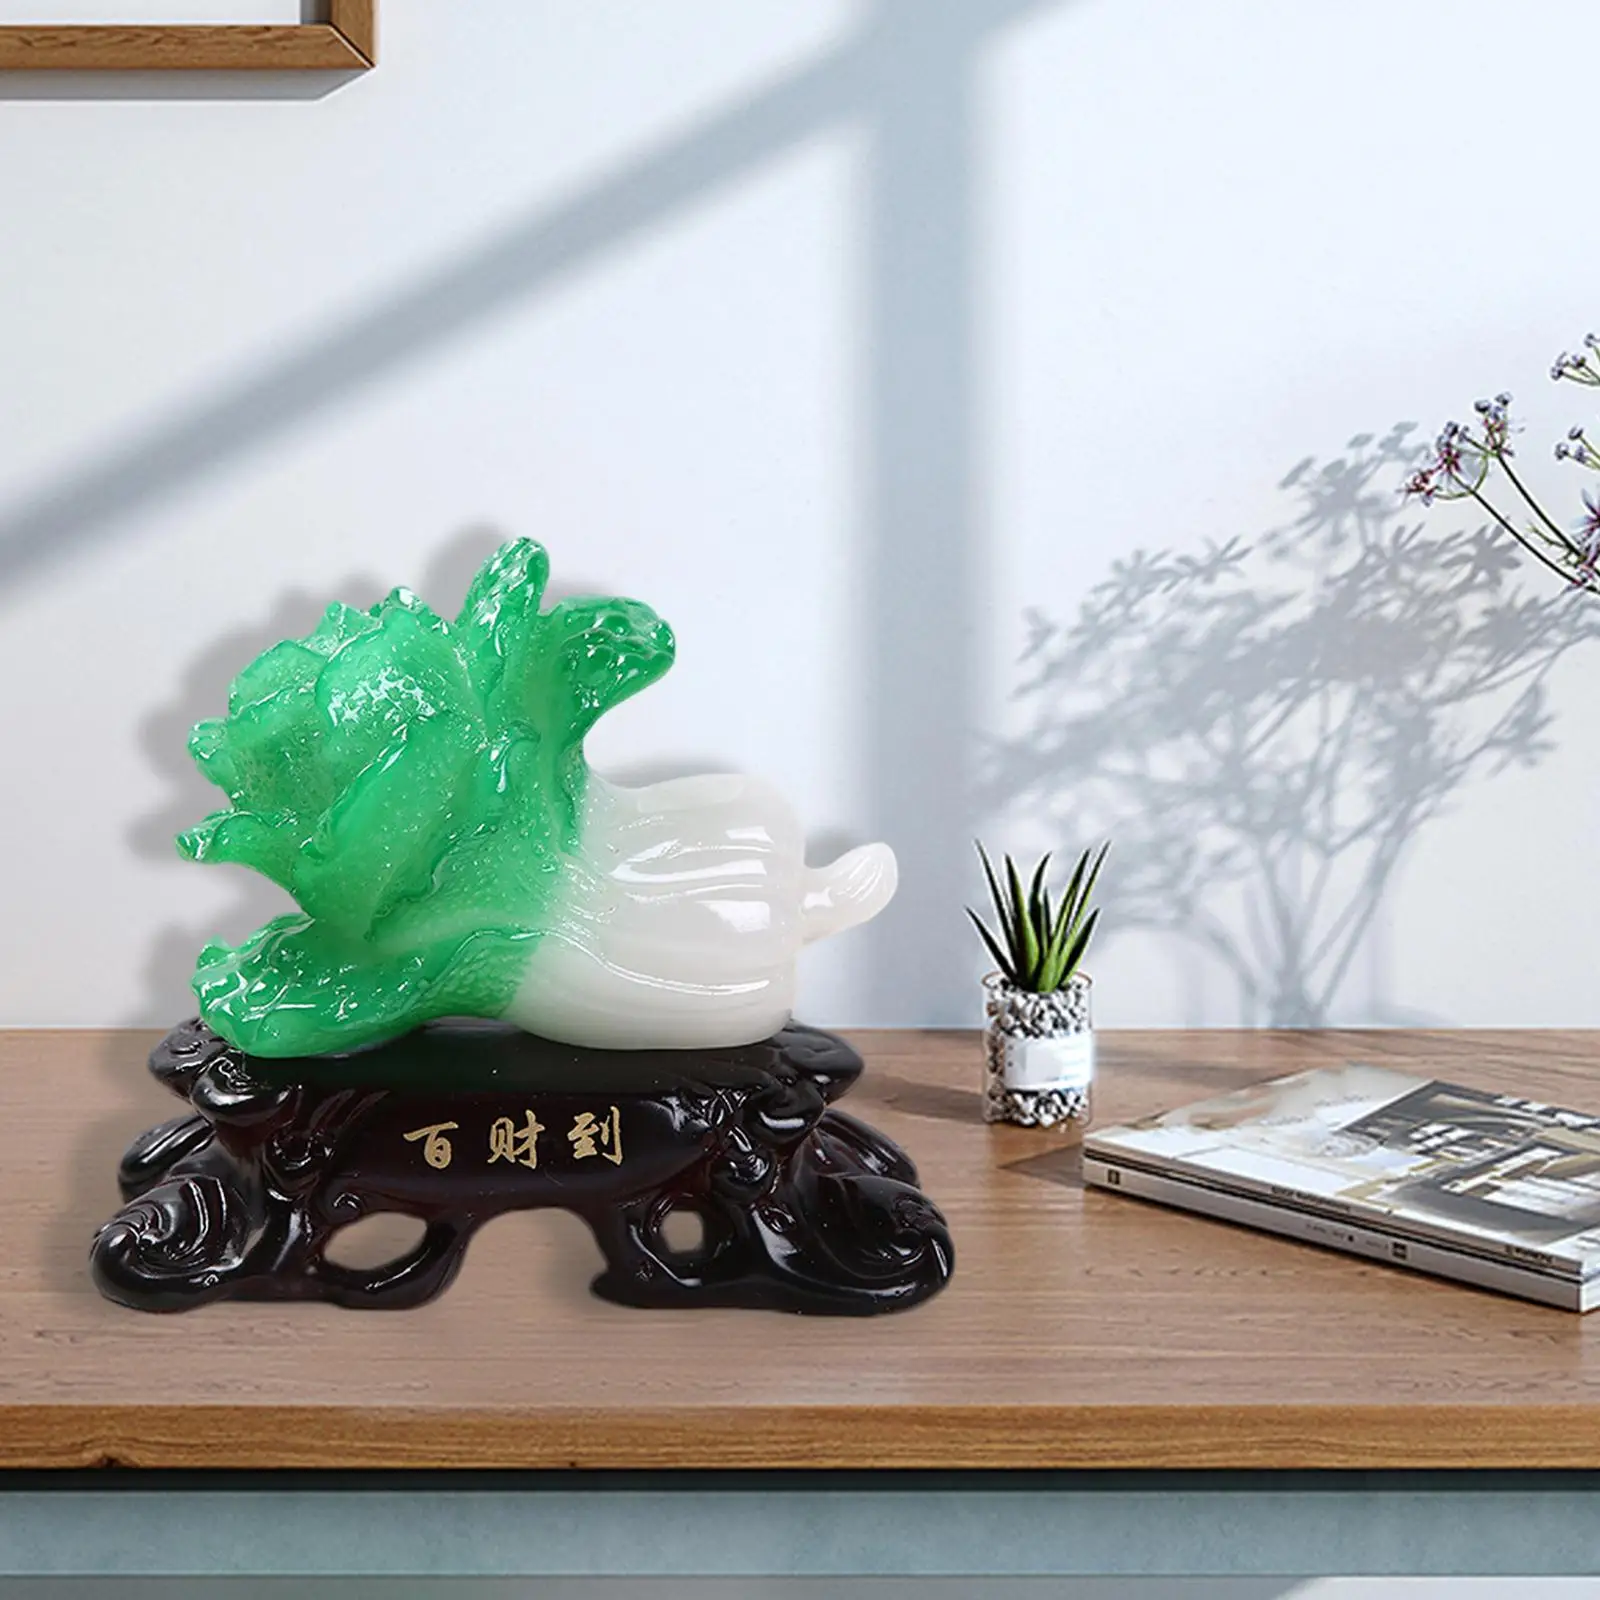 

Имитация Нефритовой капусты ремесло ручная резьба скульптура для процветания, богатства, удачи дома книжный шкаф офисный стол новоселье